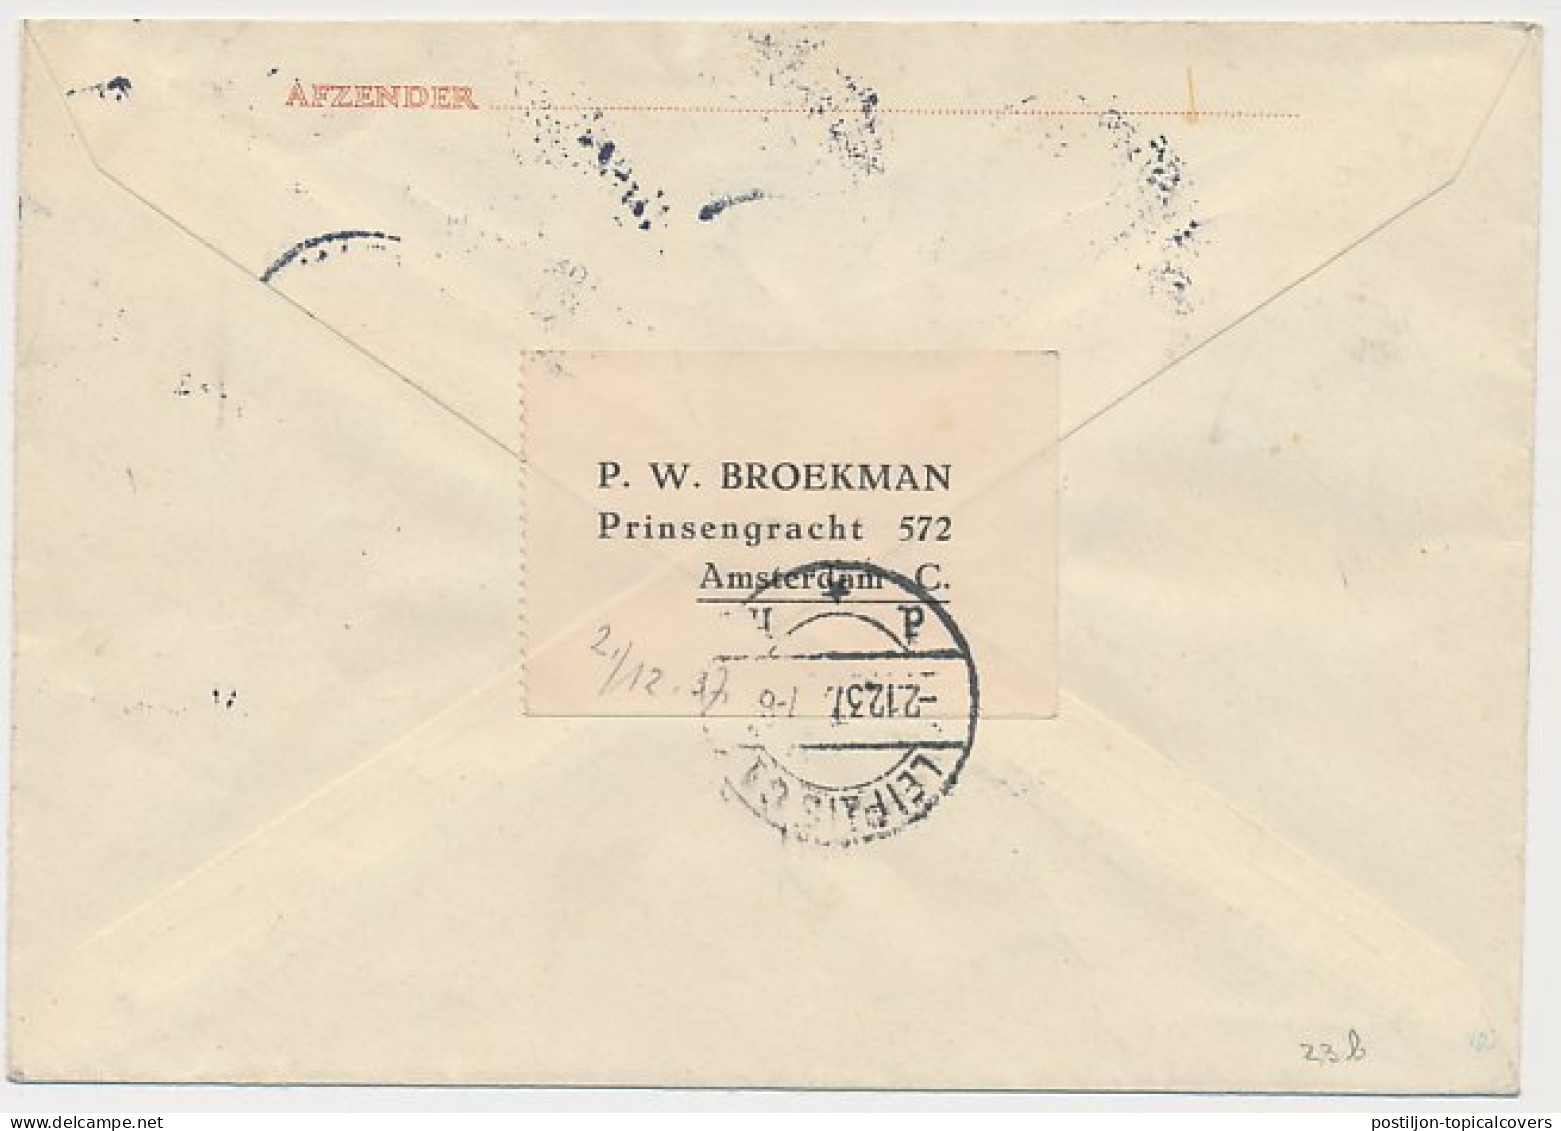 Envelop G. 23 B / Bijfr. Aangetekend Amsterdam - Duitsland 1937 - Postal Stationery